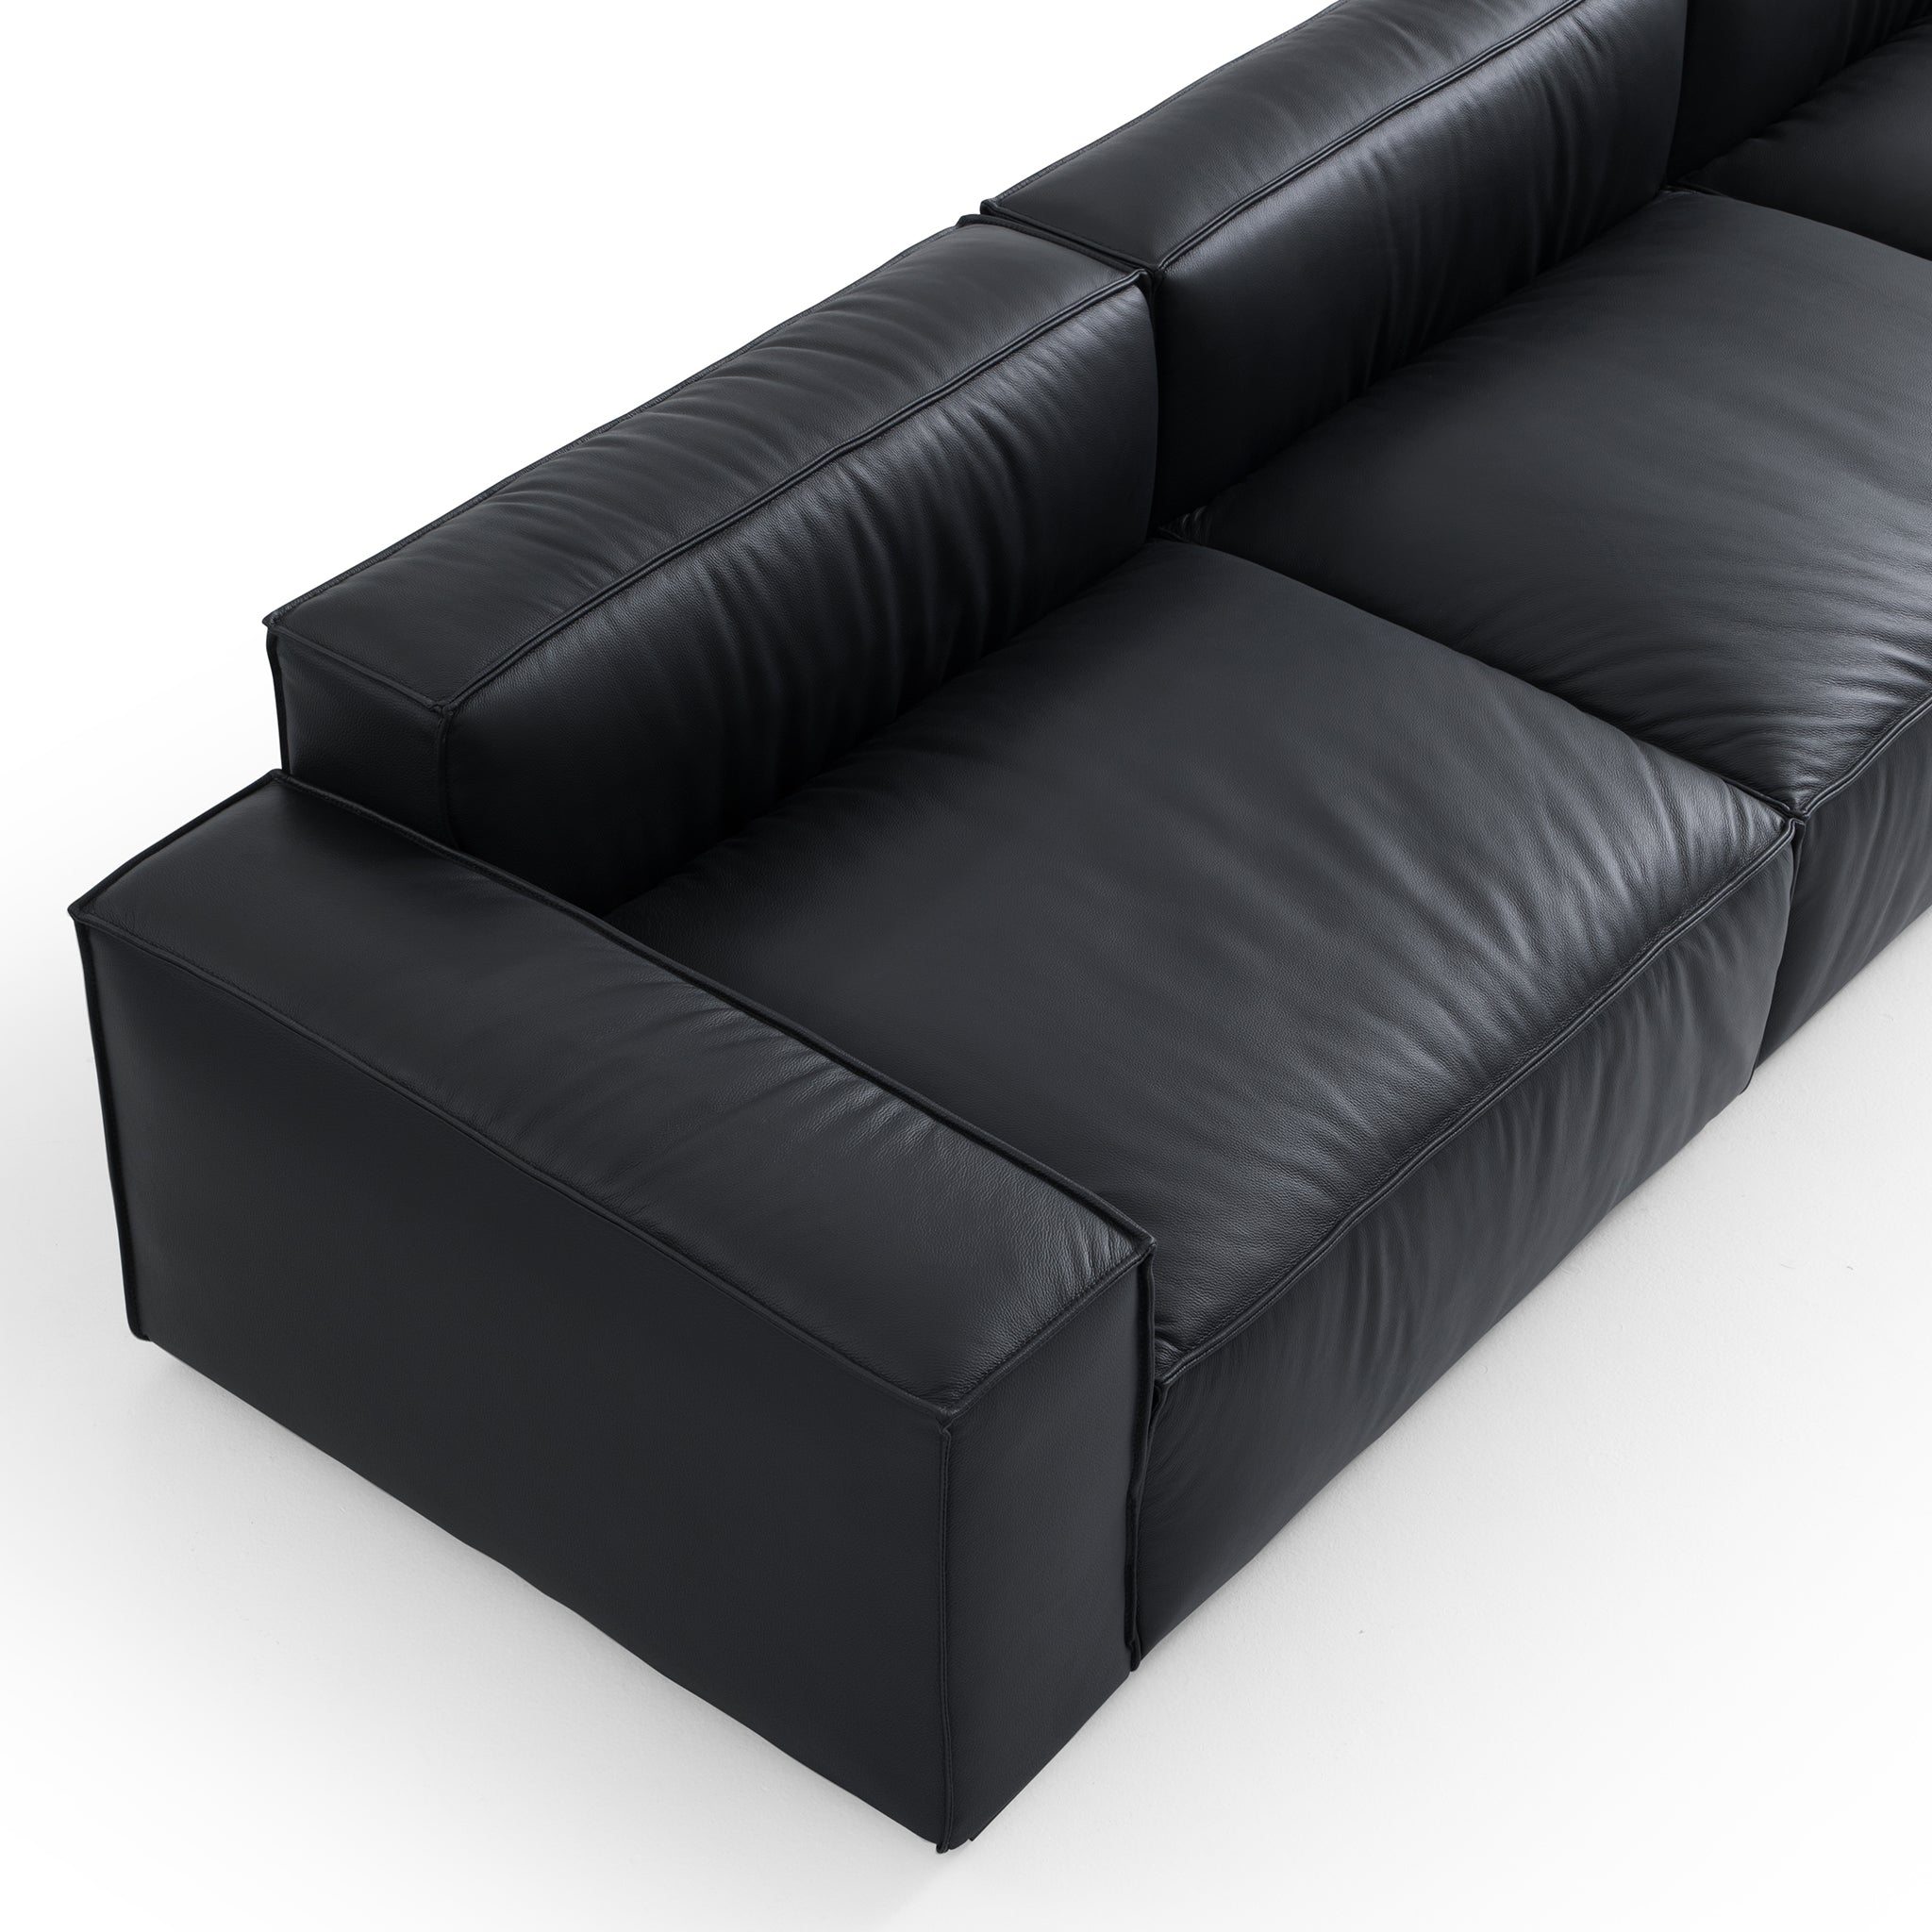 Luxury Minimalist Leather Black Sofa Set